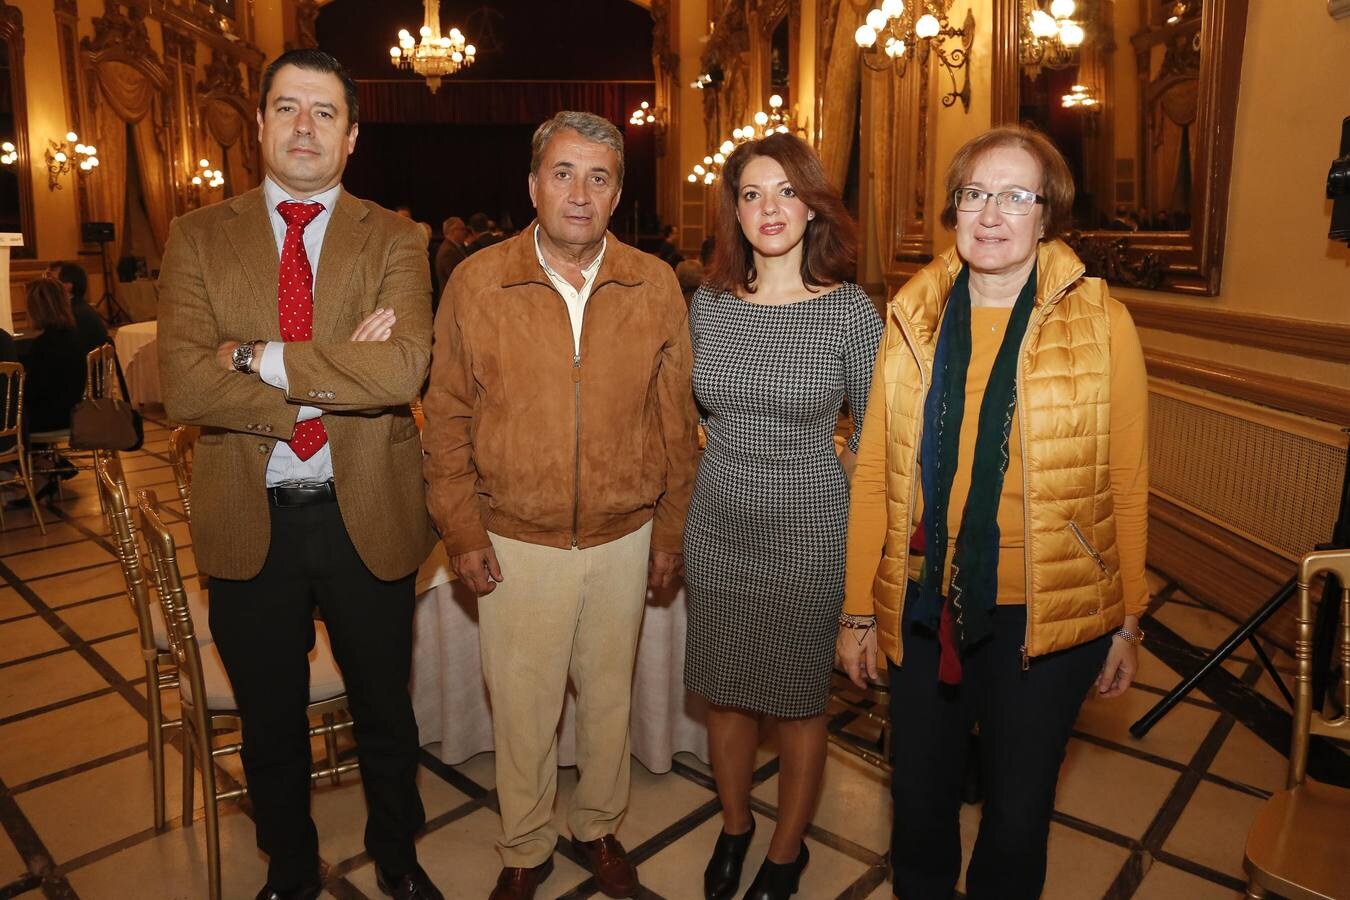 El Encuentro de Economía de ABC Córdoba con Francisco Viguera, en imágenes